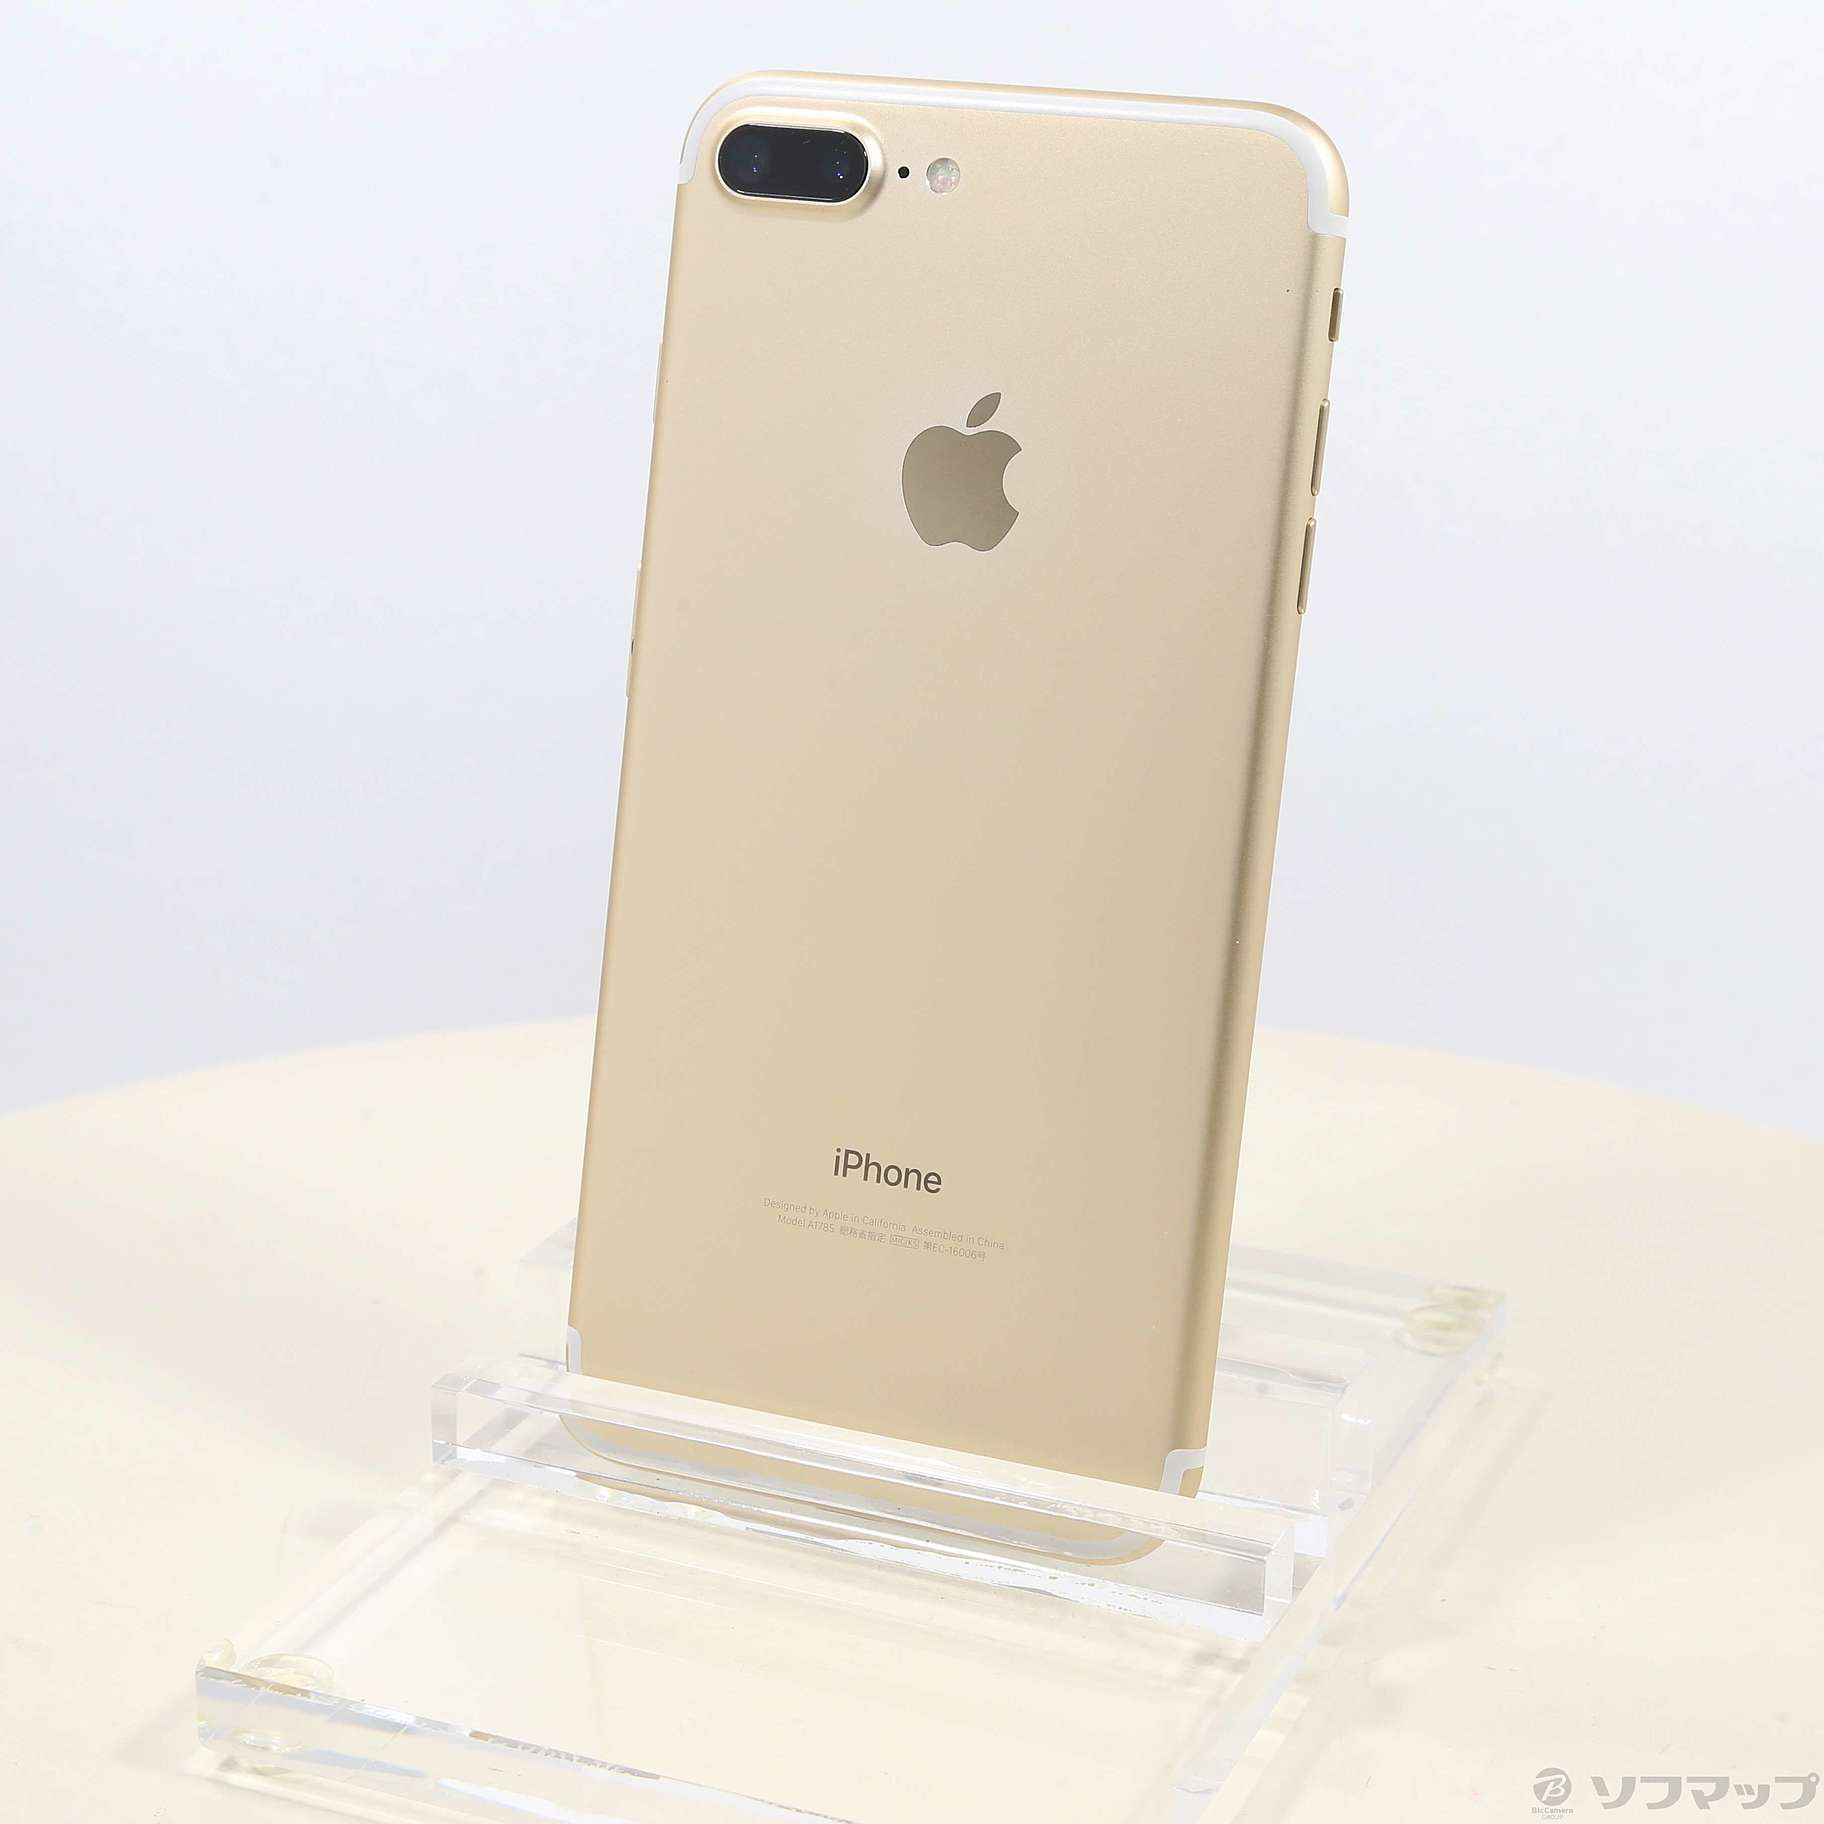 オープニング大セール MN6N2J/A iPhone plus ゴールド- 7 256gb Plus 